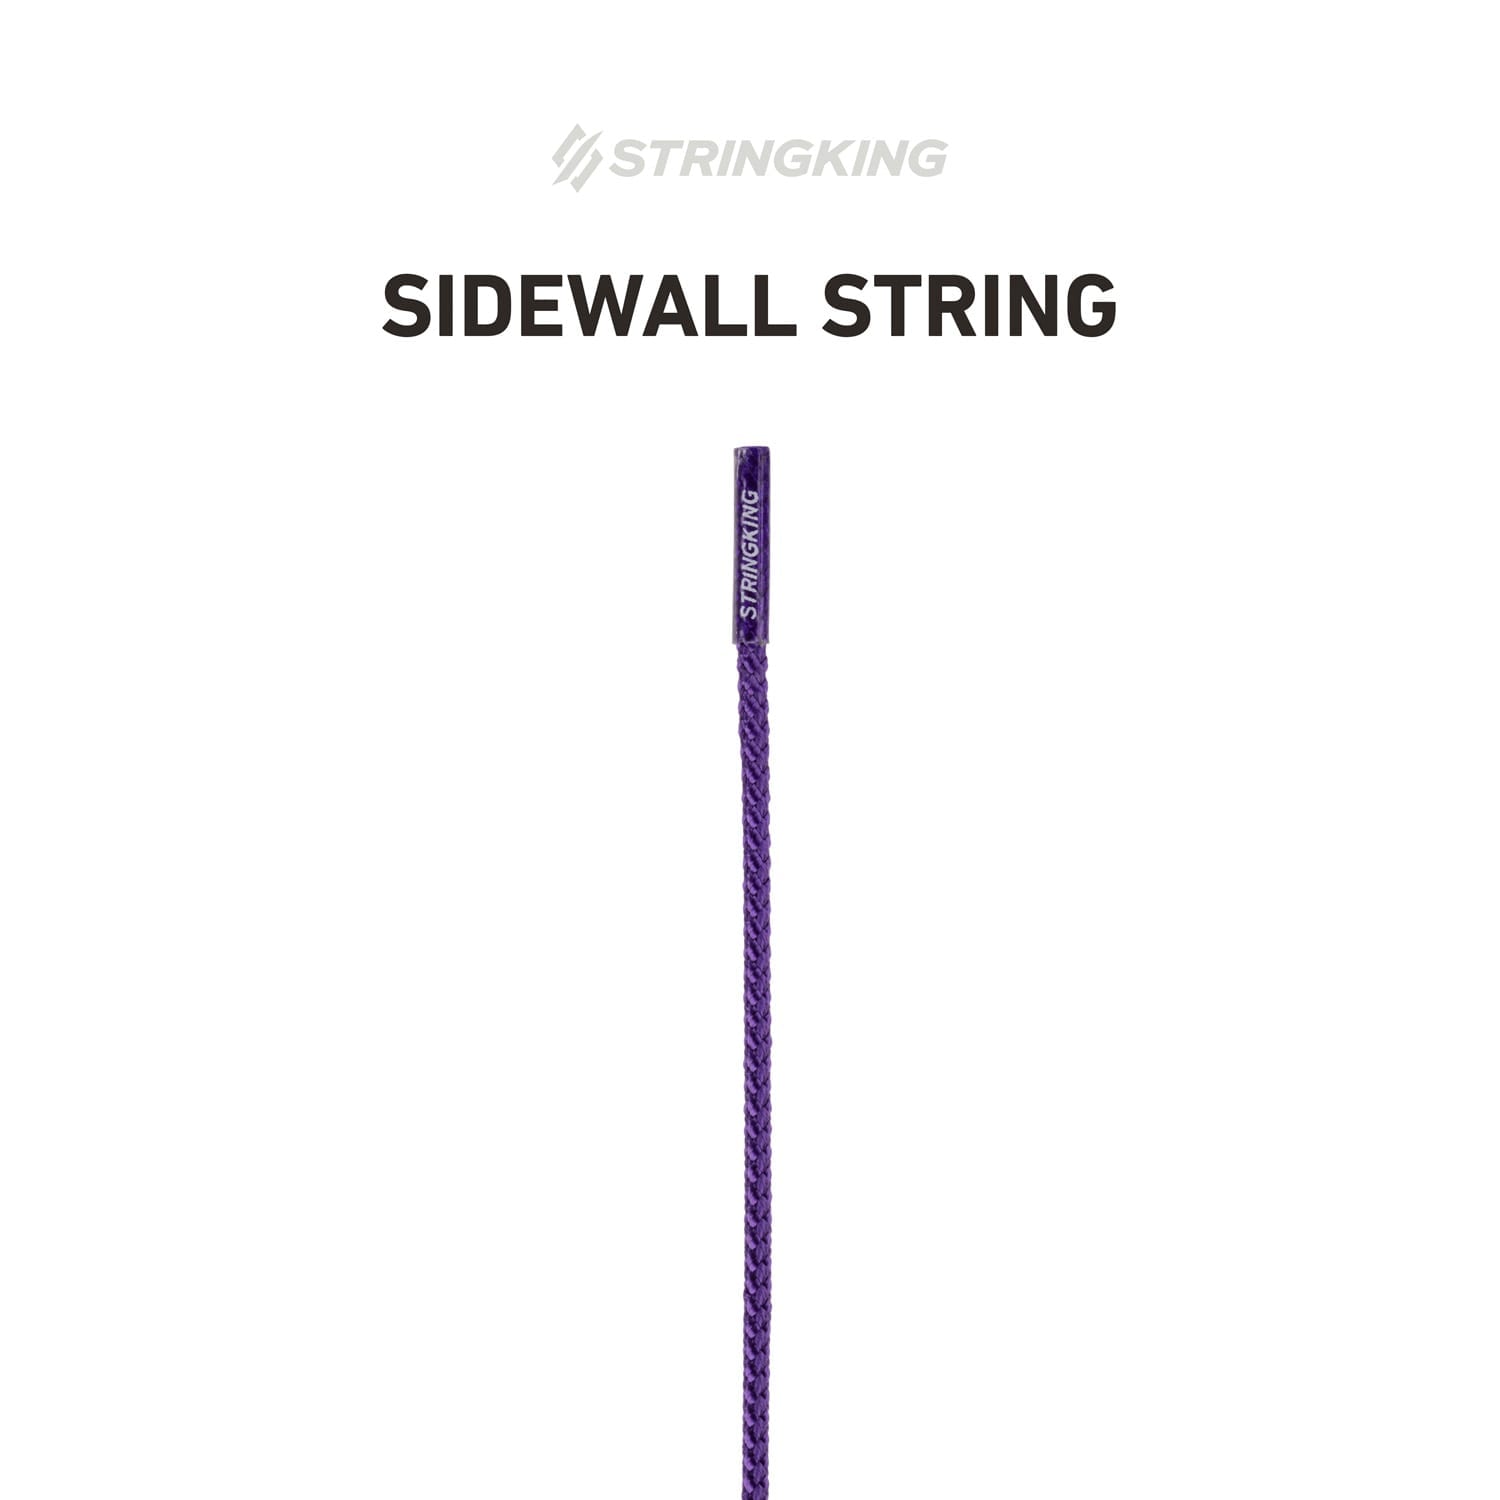 sidewall-string-specialty-retailers-purple.jpg